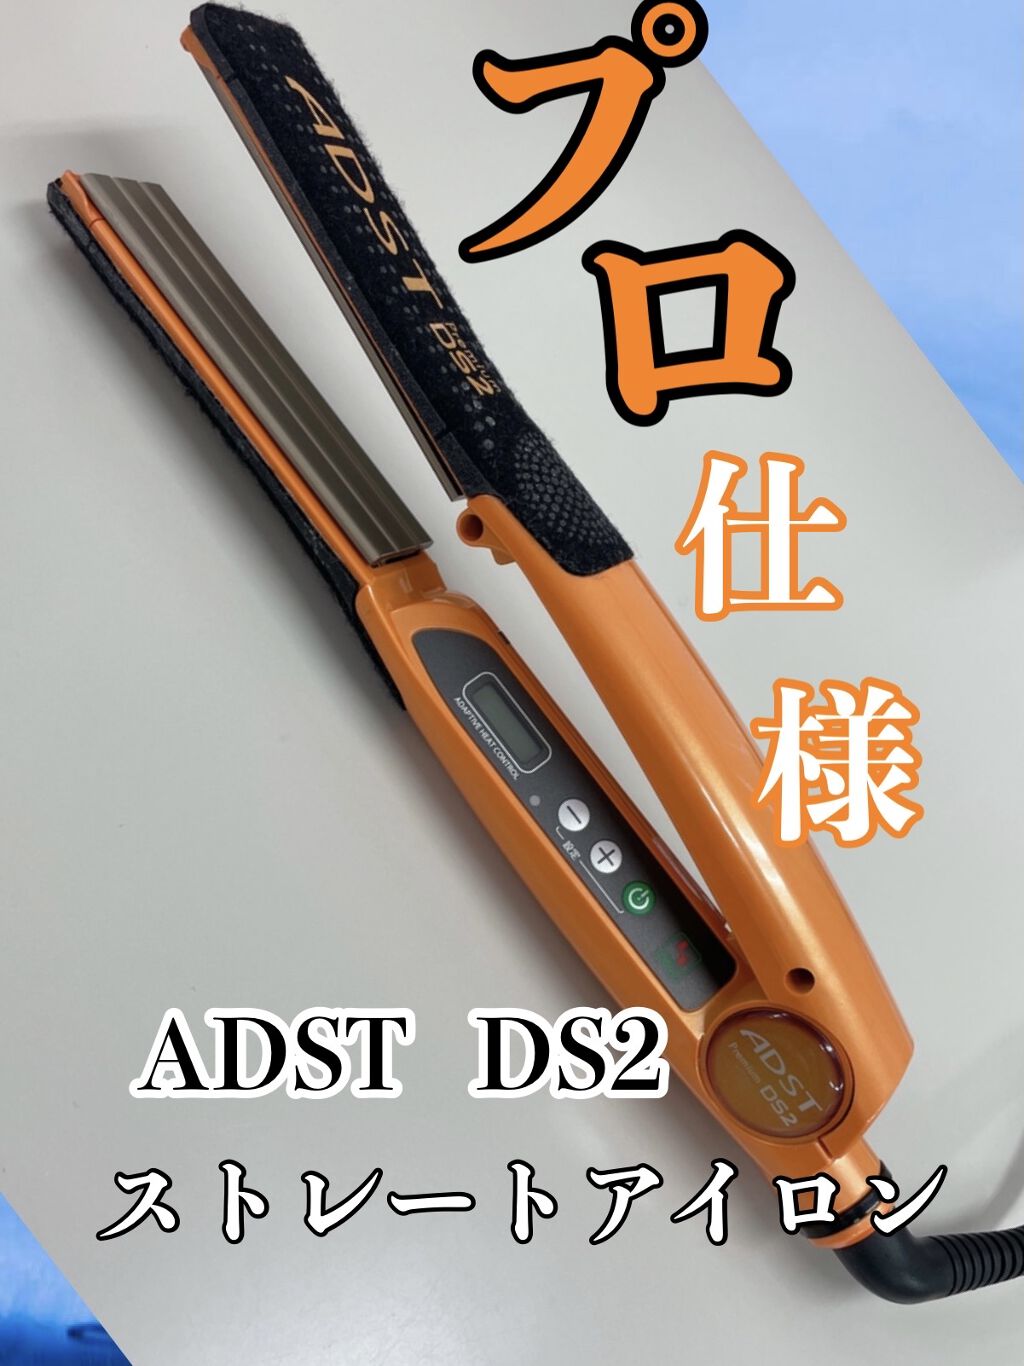 アドストプレミアム ADST Premium DS2+del-pa.de